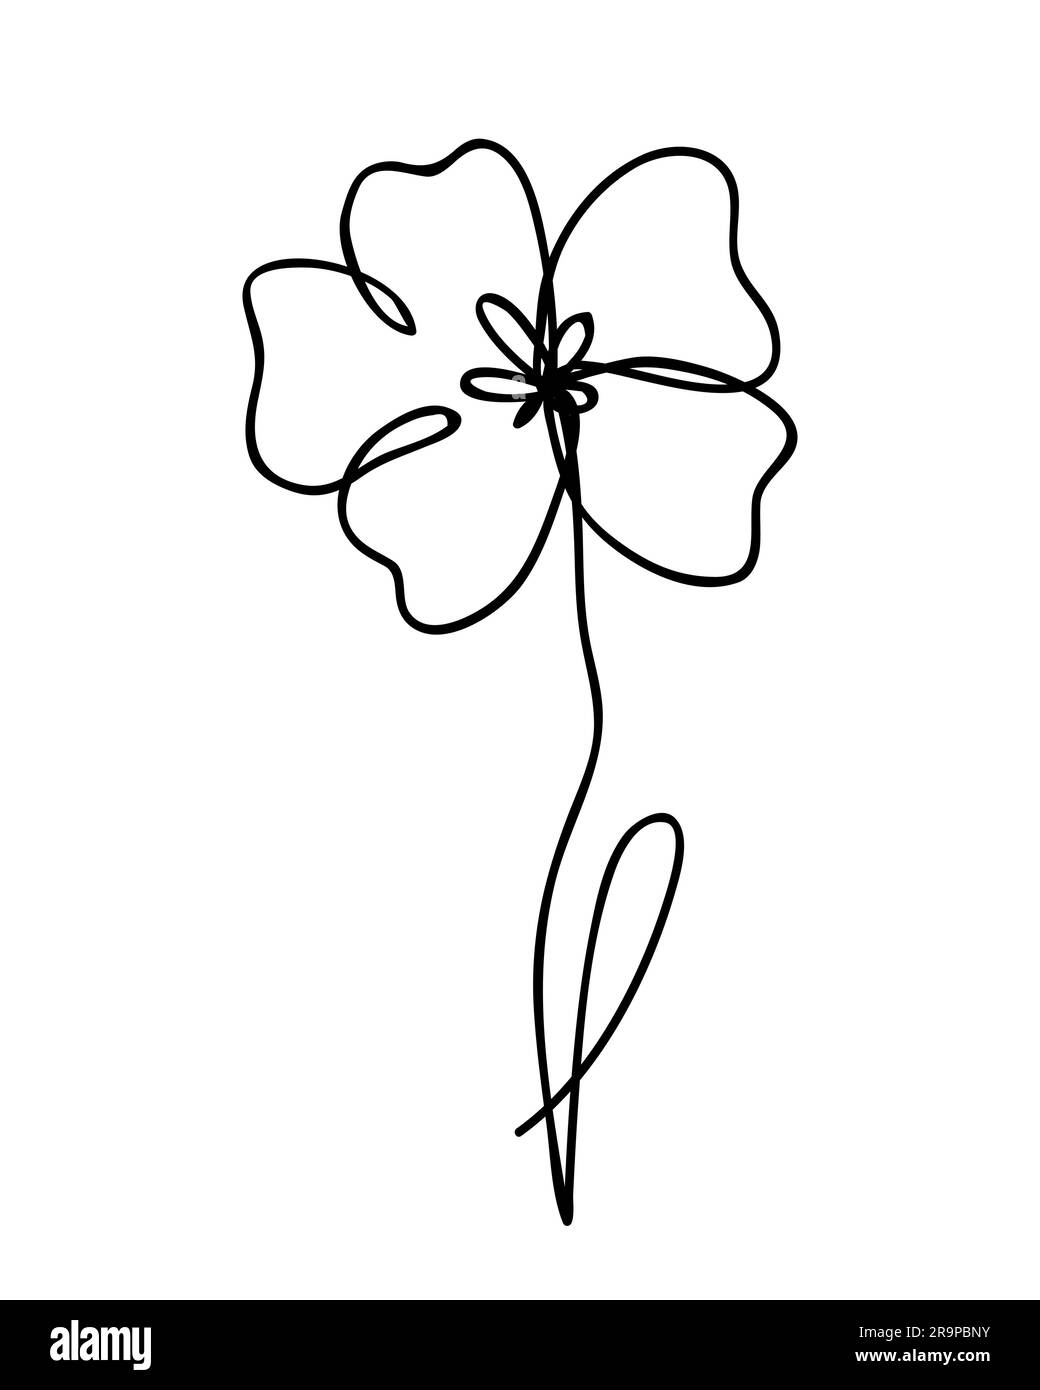 Illustration vectorielle d'un dessin d'une ligne abstrait fleur coquelicot. Design minimaliste moderne dessiné à la main pour un logo, une icône ou un emblème créatif Illustration de Vecteur